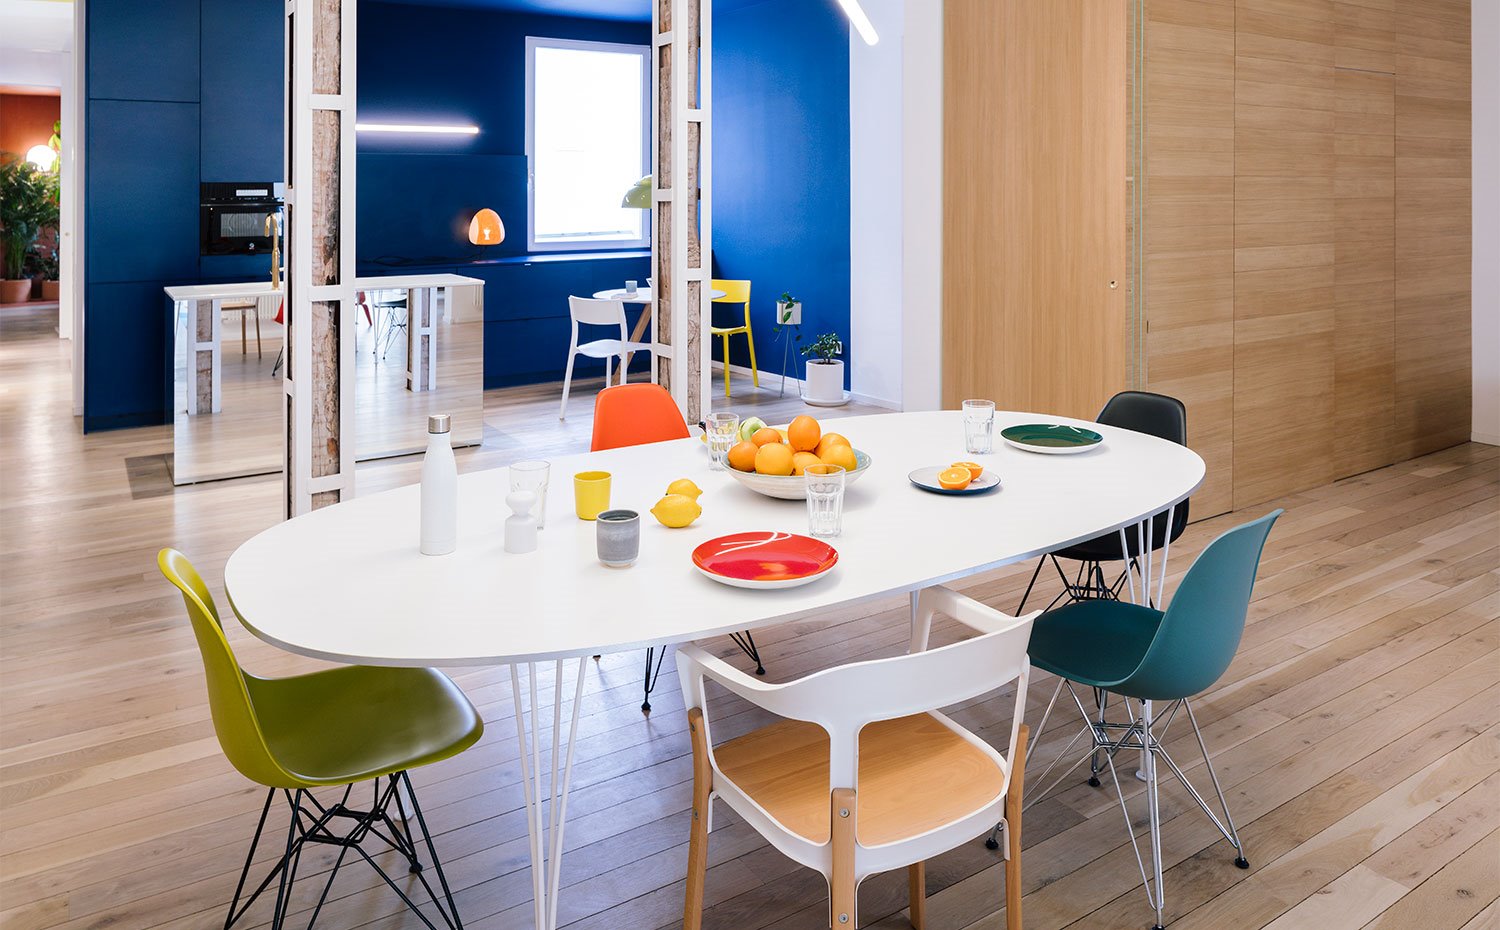 Mesa de comedor en blanco, con sillas en diferentes disen~os y colores, carpinteri´a en madera natural, pared del fondo en azul